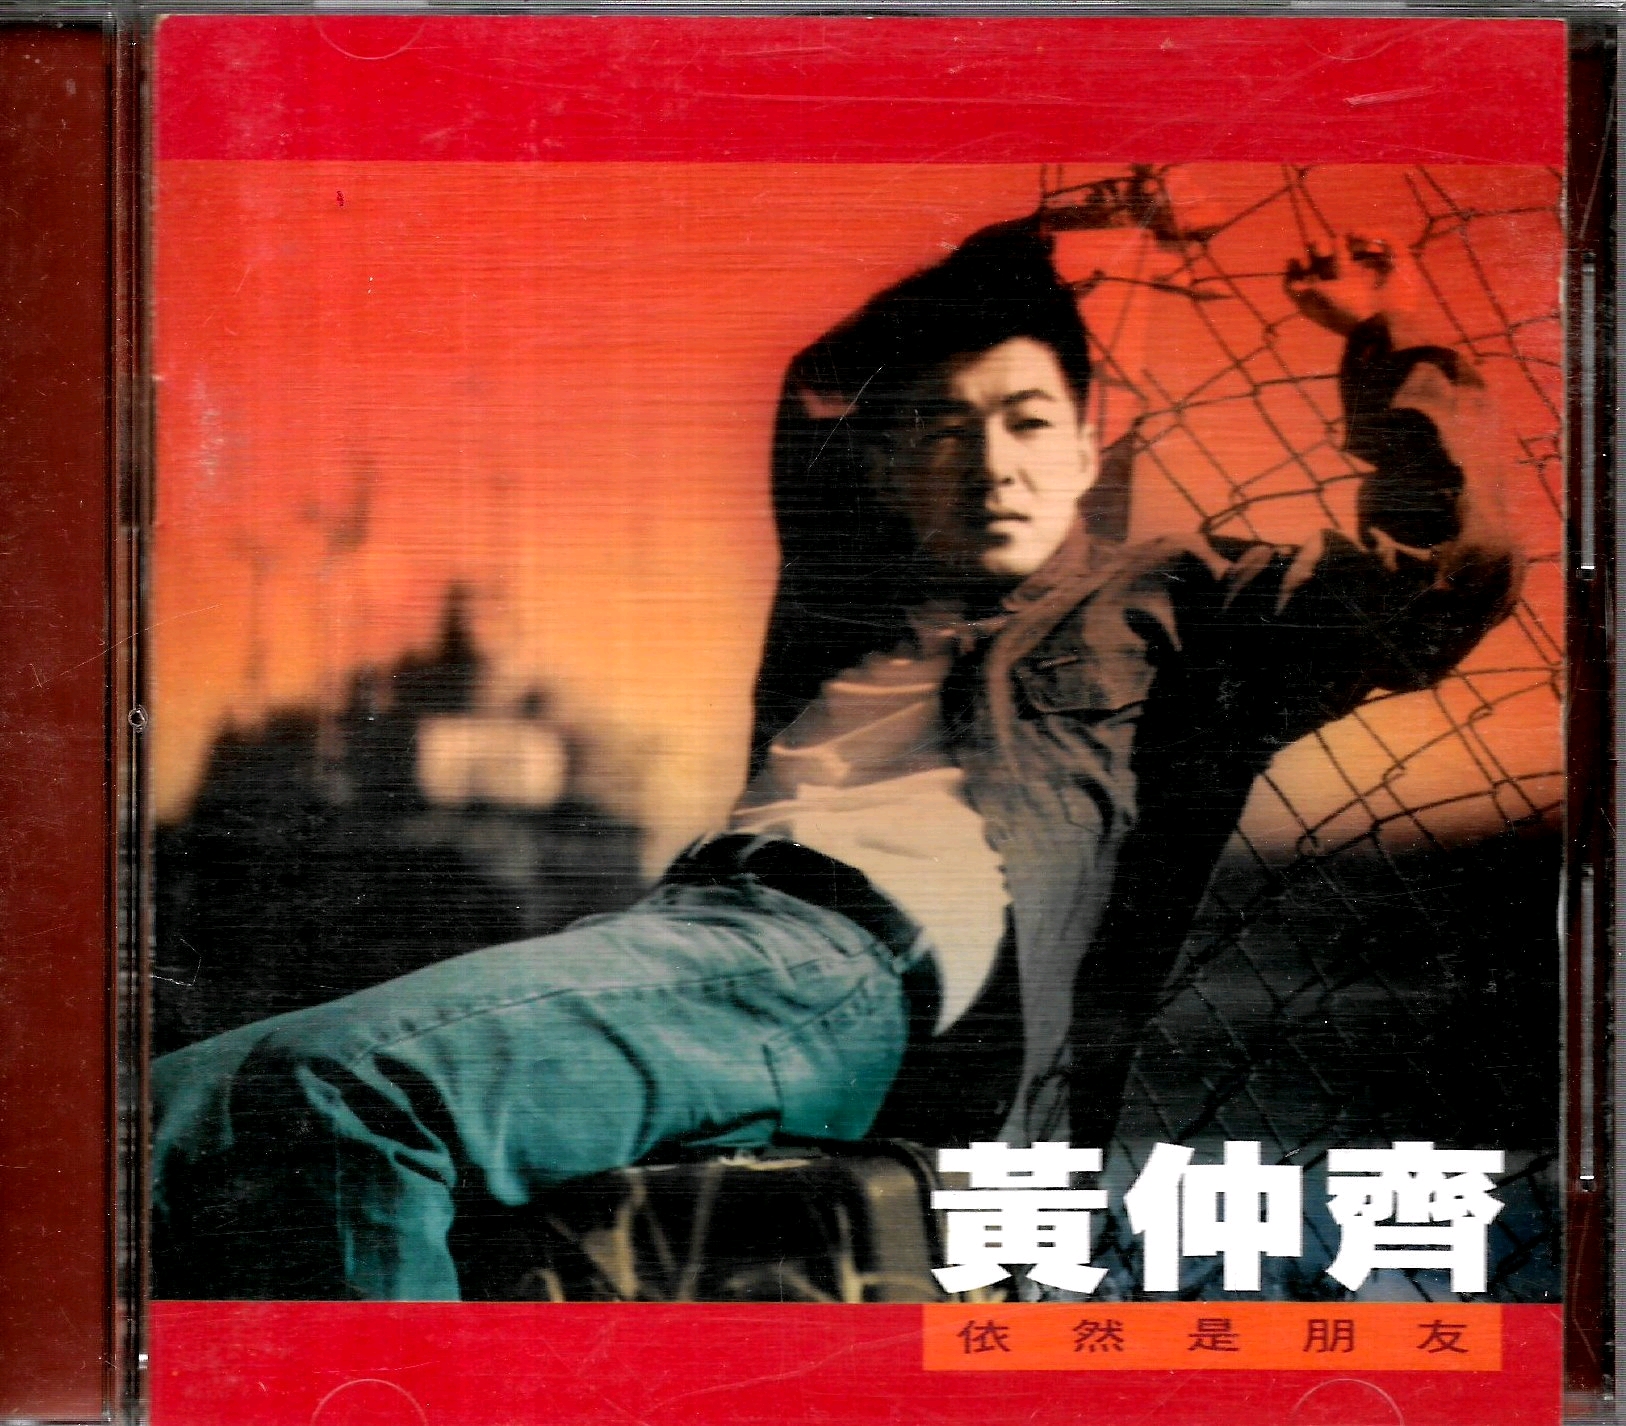 黄仲齐的第一张专辑《是否你会等像我这样的男人》 - 哔哩哔哩